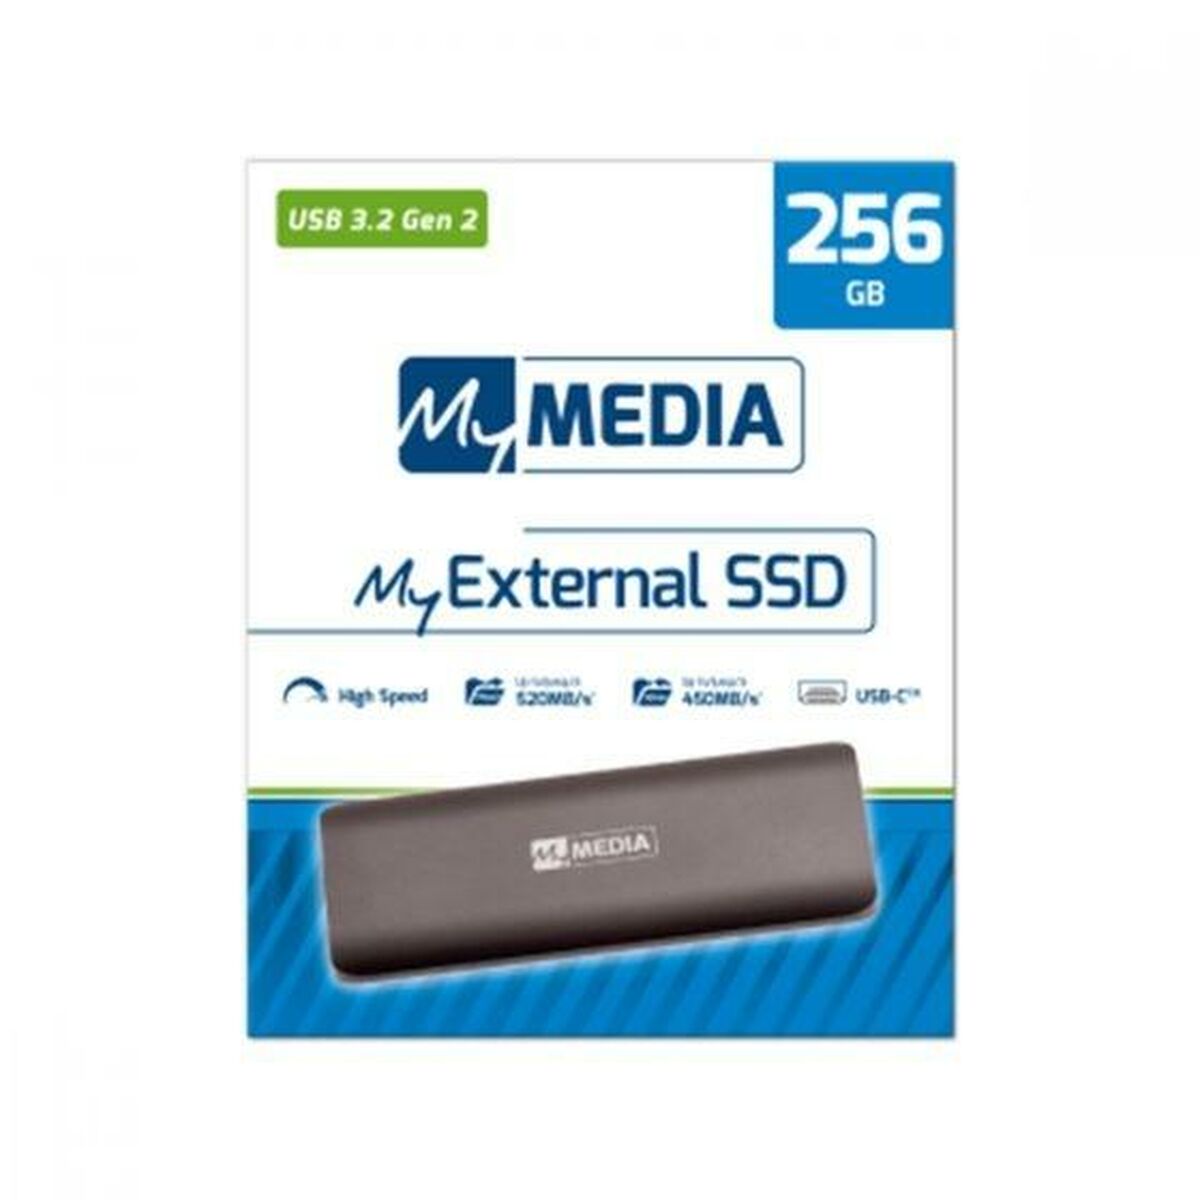 USB Pendrive MyMedia 256 GB Schwarz